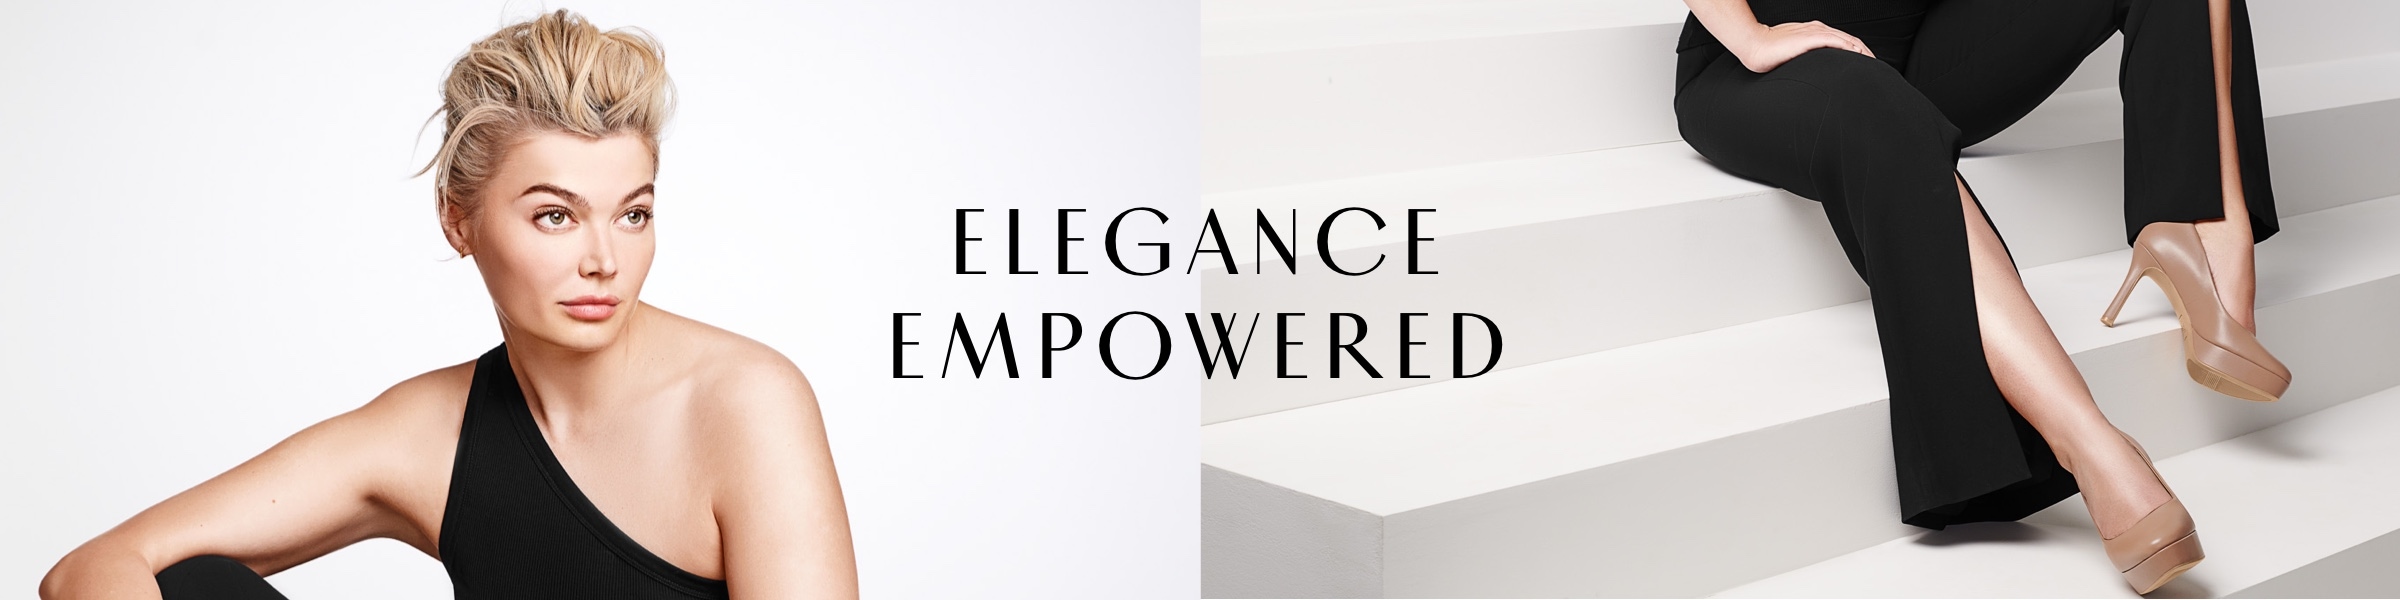 elegance empowered